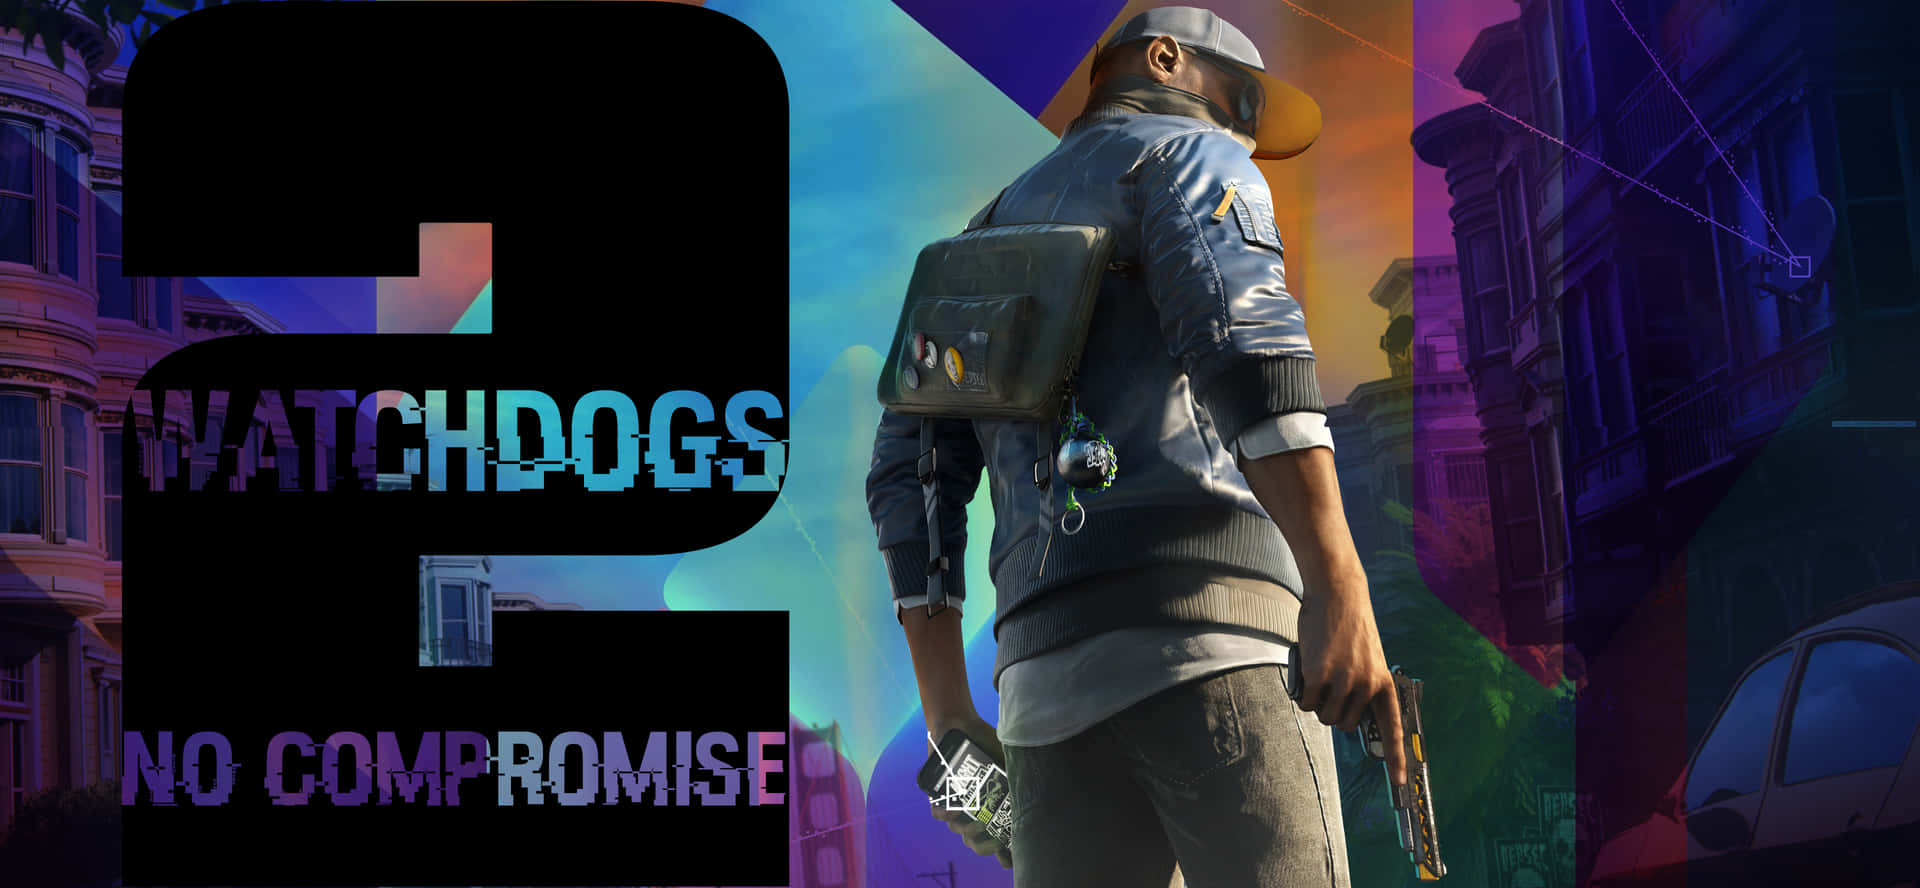 Oplev HD Grand Theft Auto-stil gaming med Watch Dogs 2 4K grafisk vægmotiv. Wallpaper